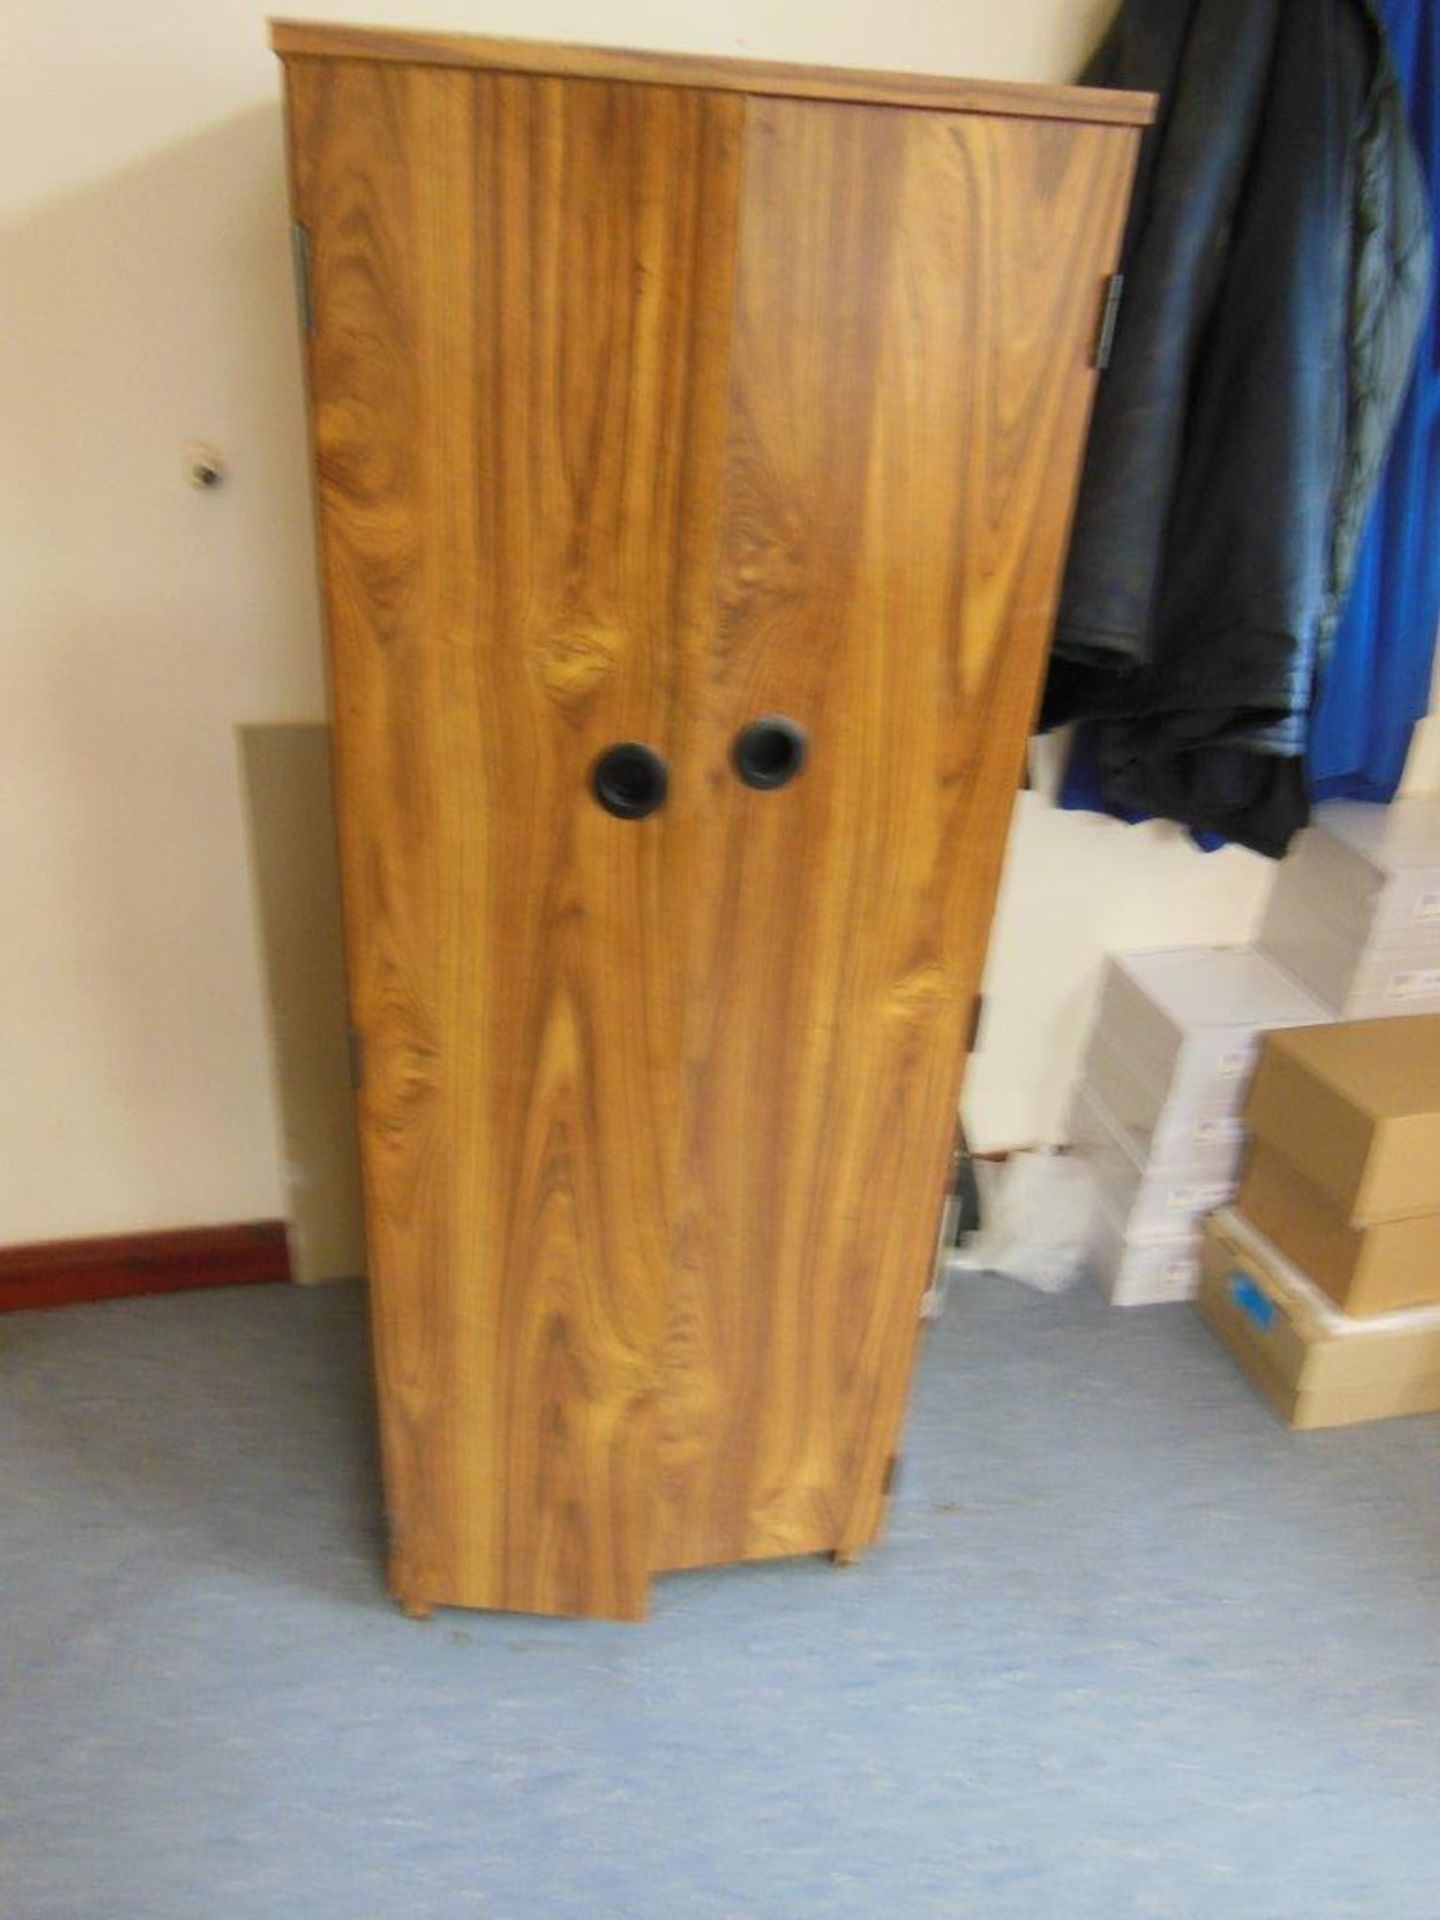 Contents of office including 6 wooden desks, 5 assorted chairs, wooden double door coat cupboard, - Image 2 of 3